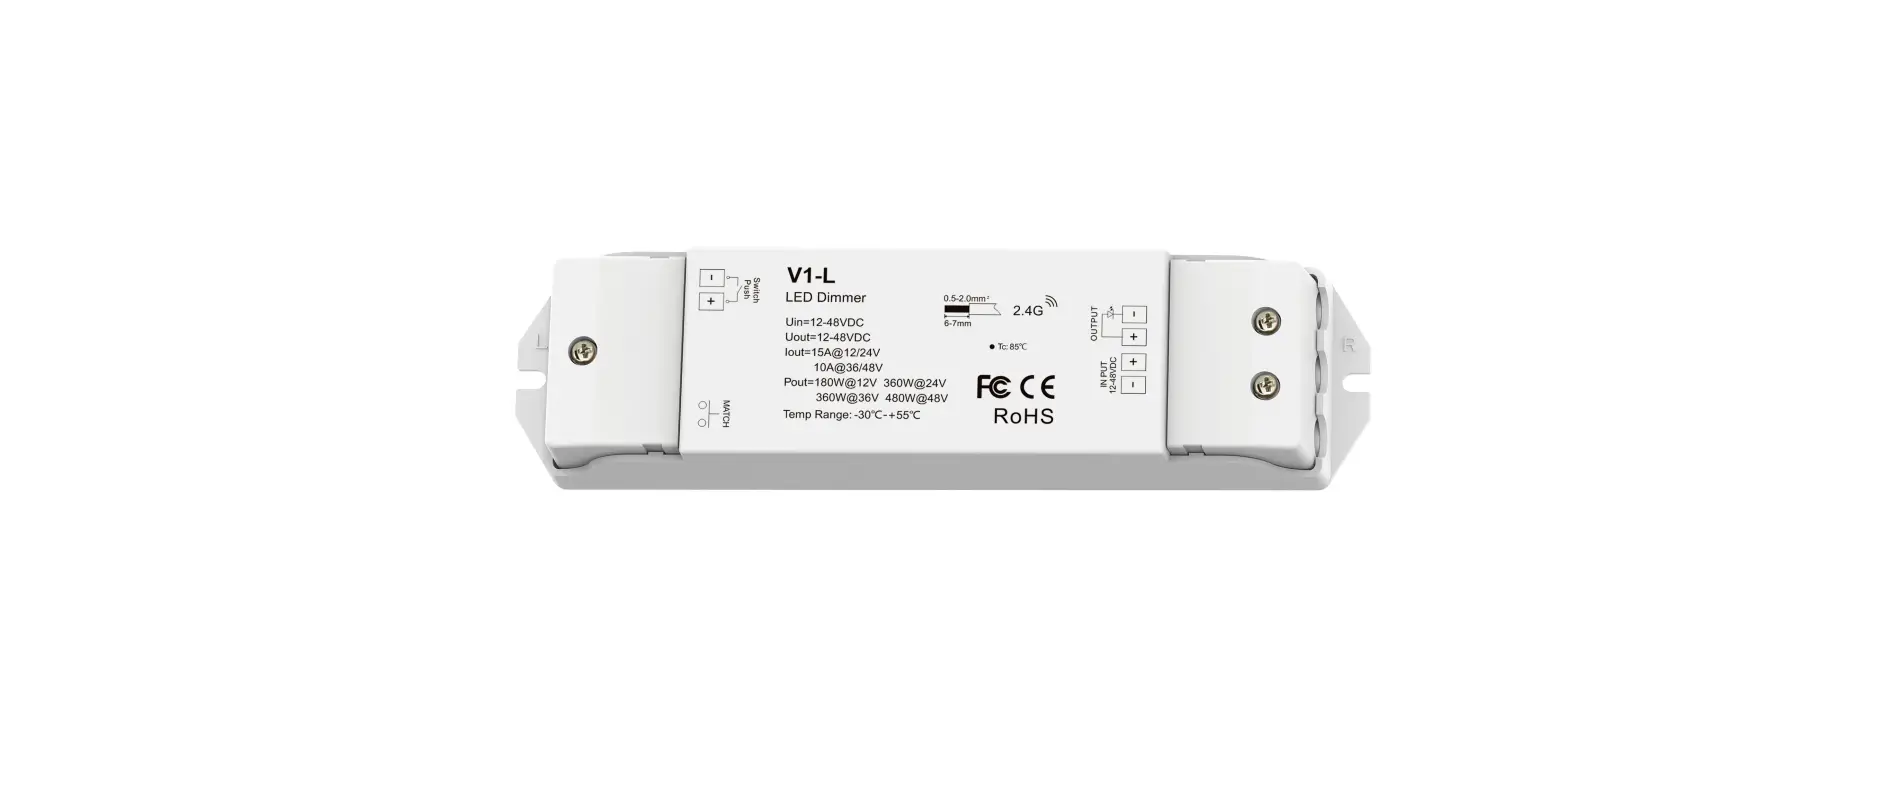 V1-L Single Color LED Controller